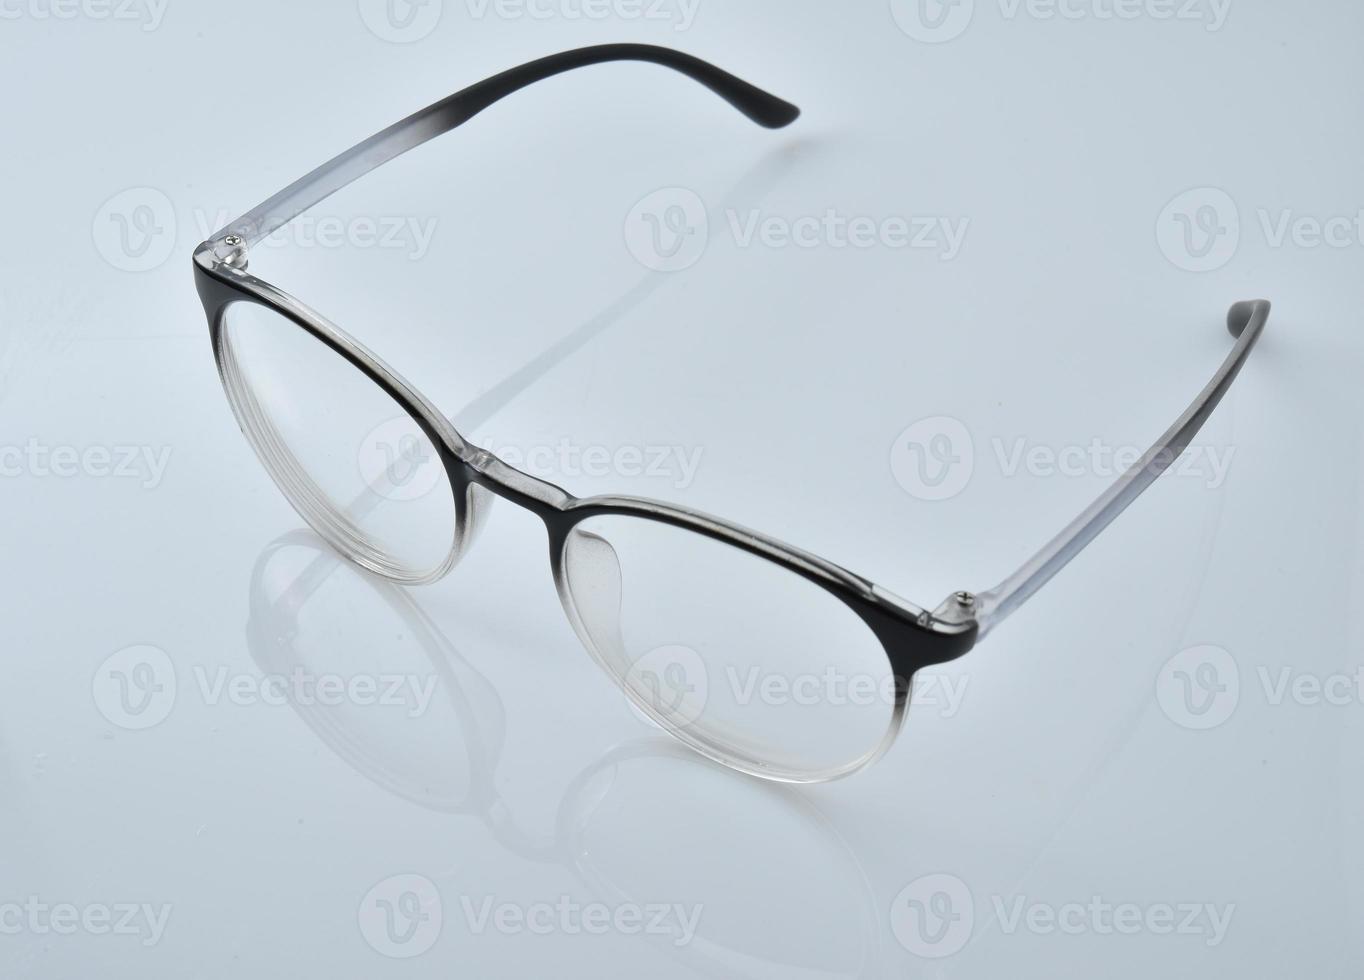 glasögon på en vit bakgrund foto